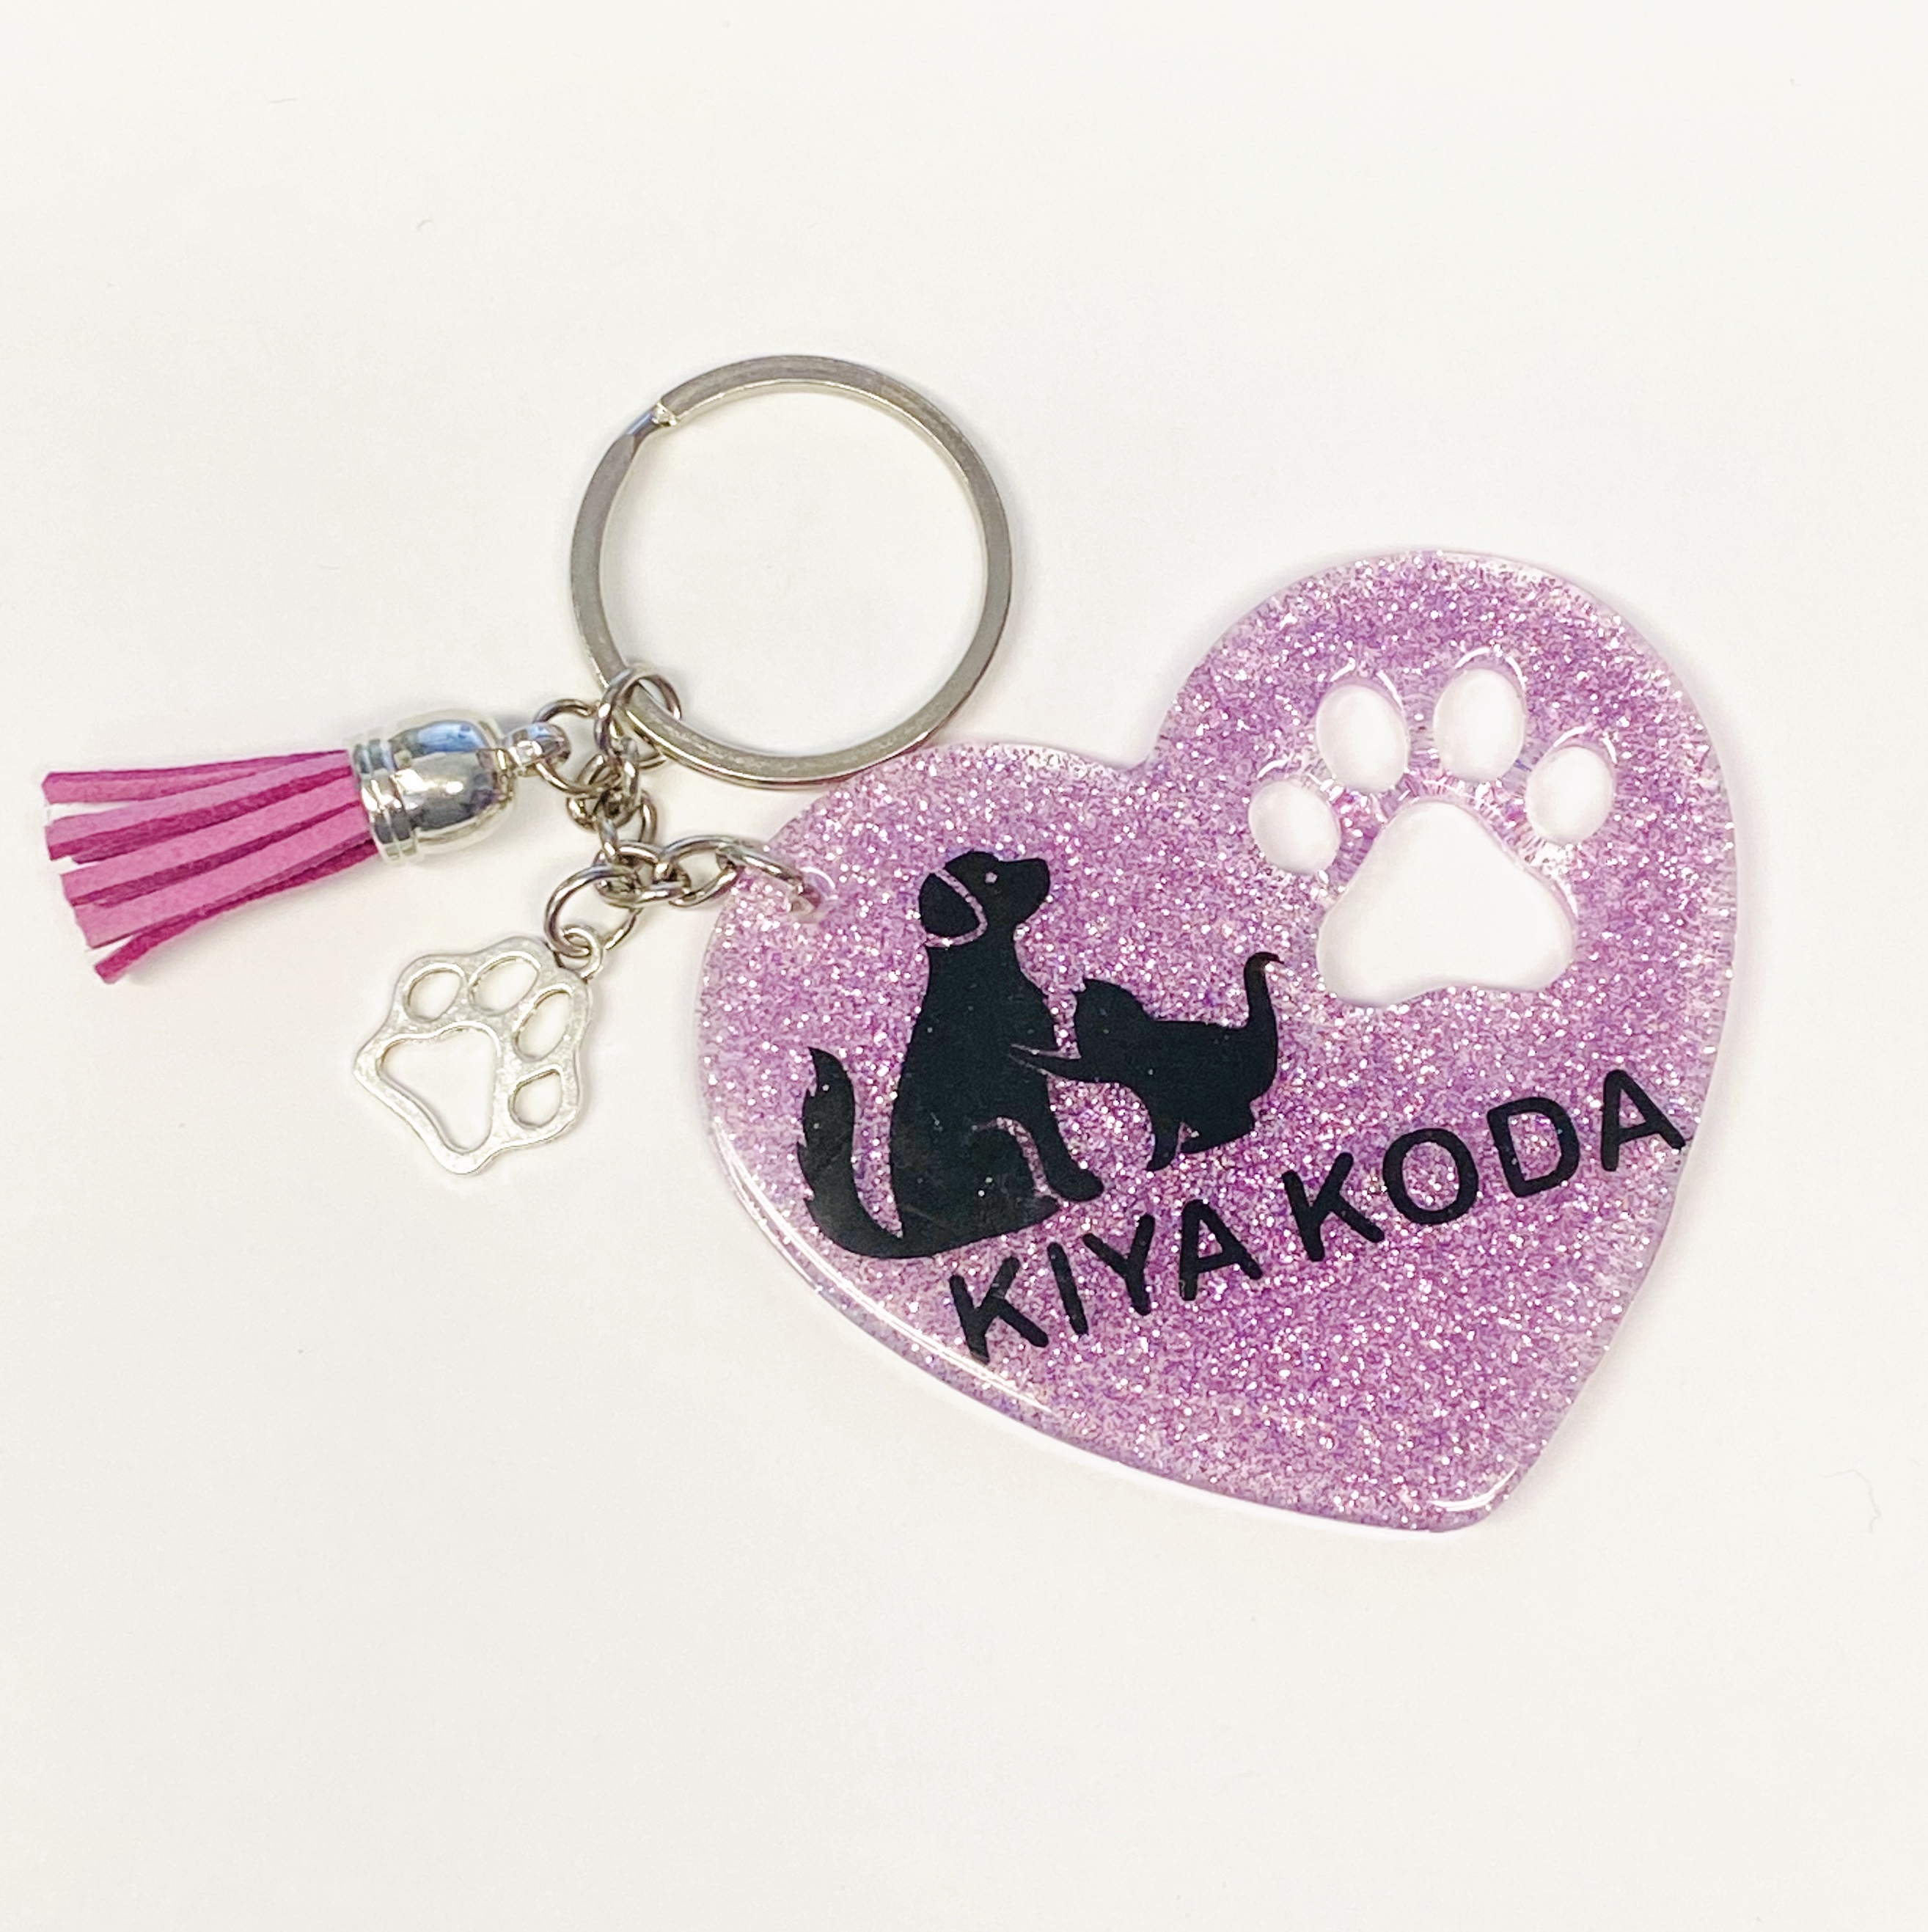 Kiya Koda Keychains